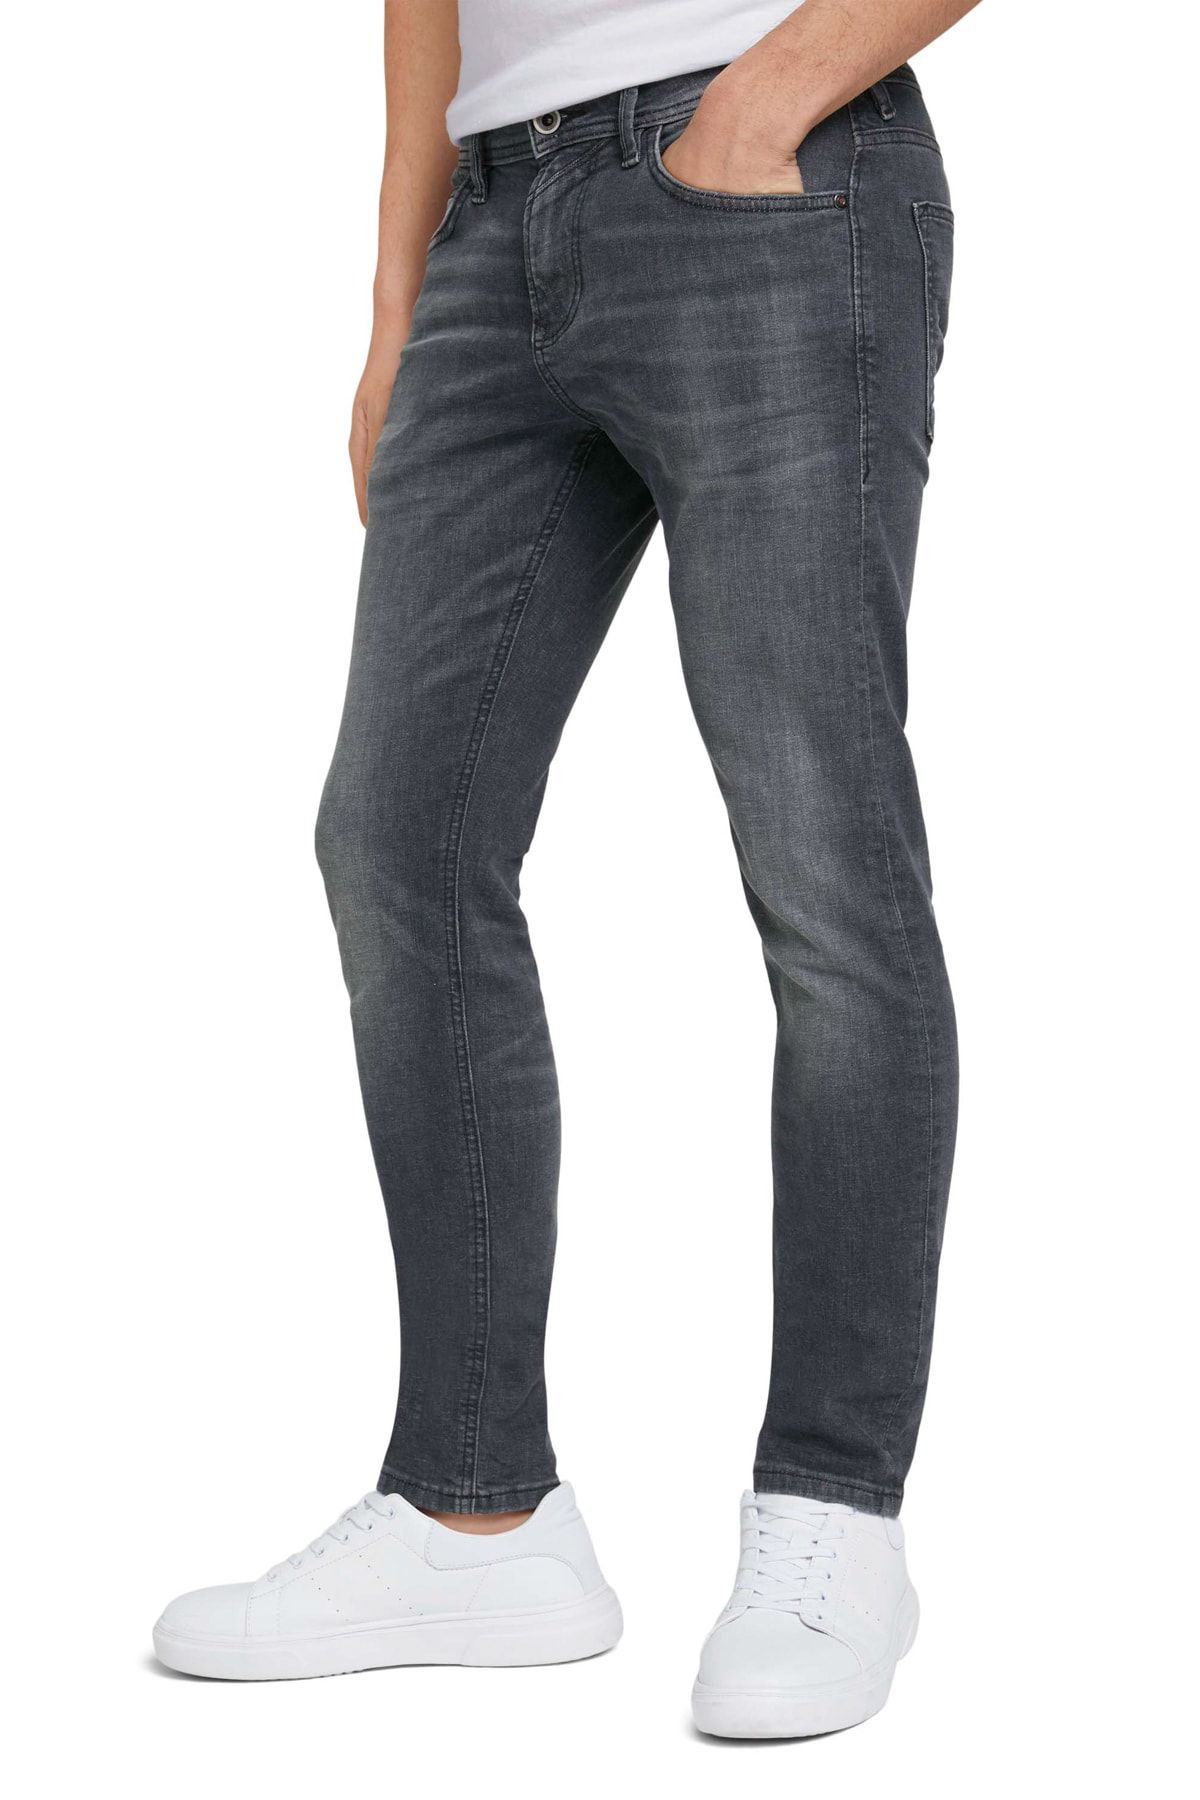 Tom Tailor Denim Jeans - Gray - Skinny - Trendyol | Strickröcke